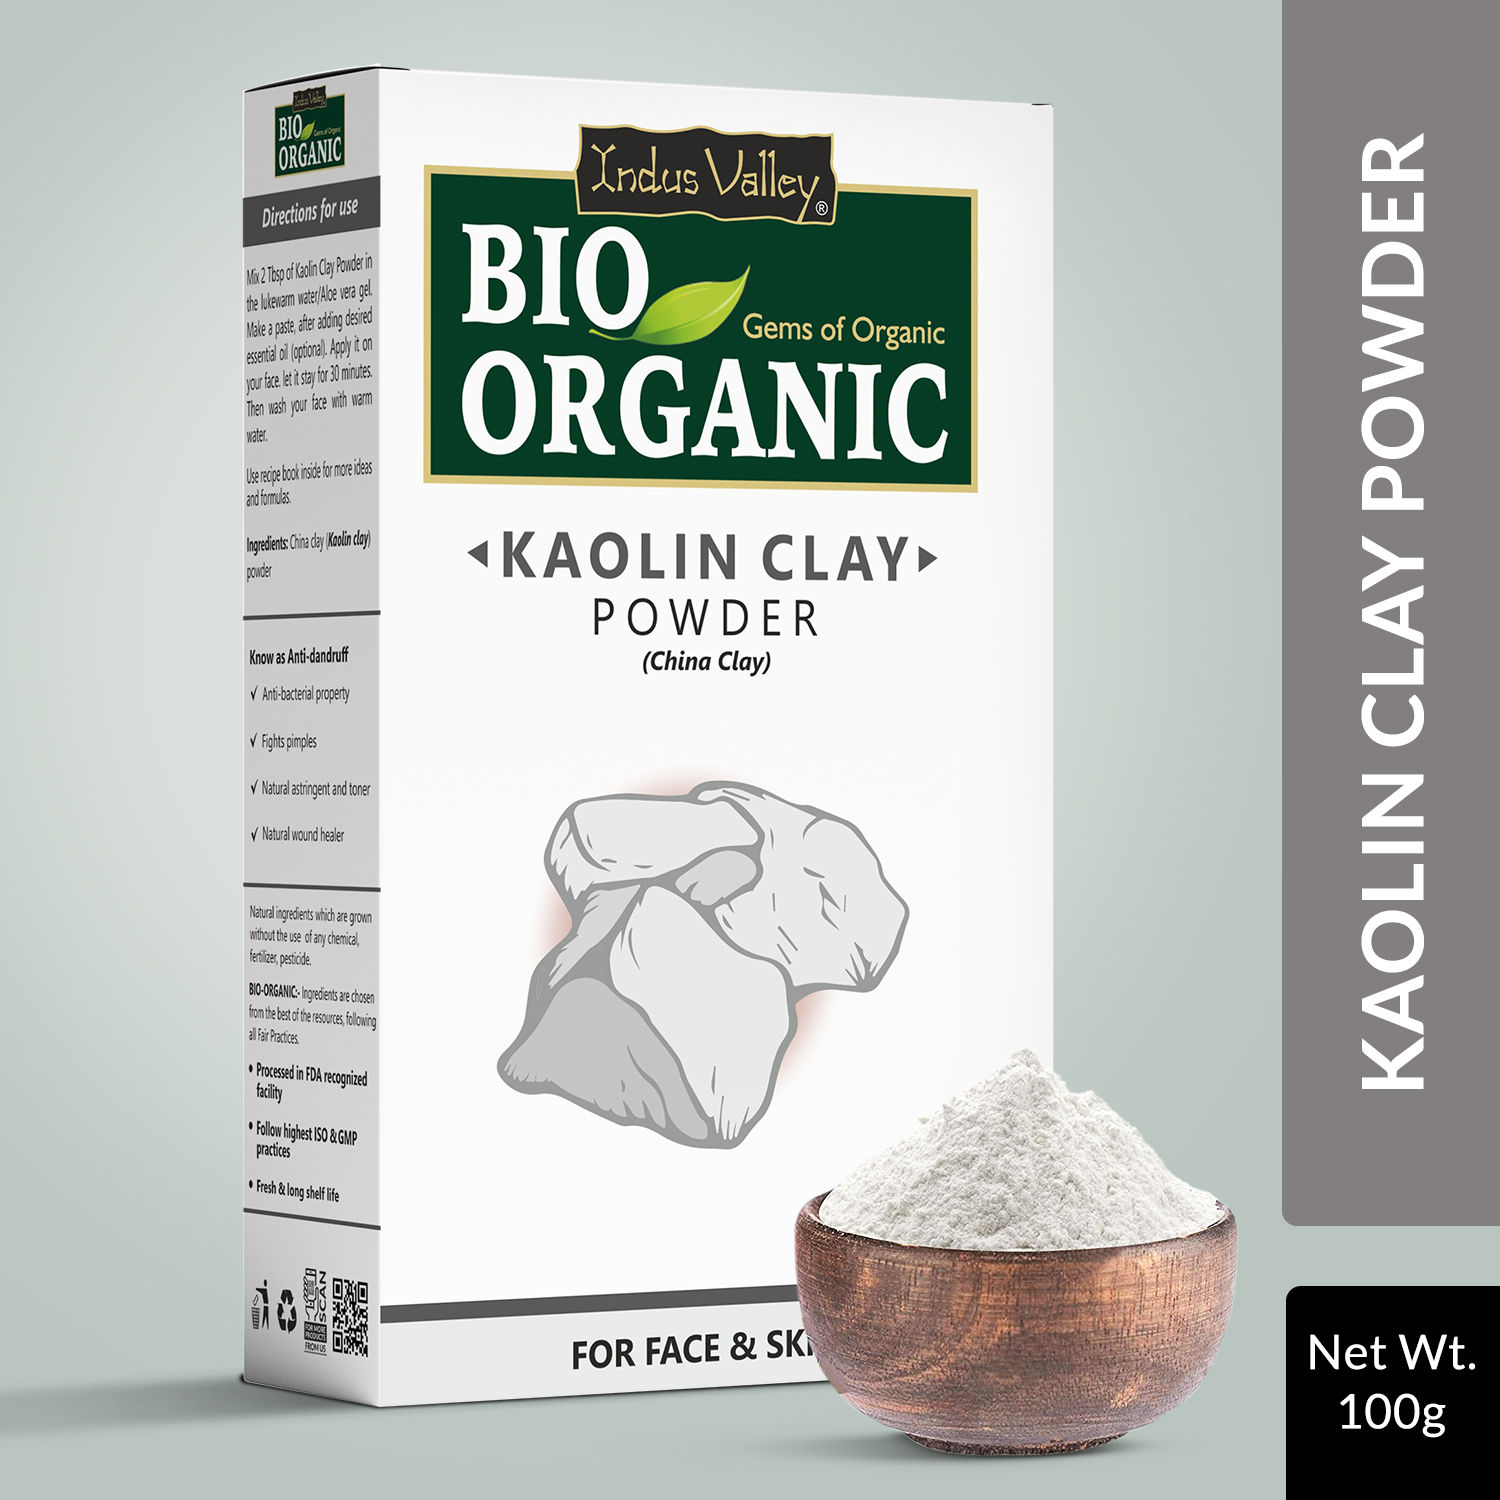 Indus Valley Bio Organic 100% Pure Rose Petals Powder - Price in India, Buy  Indus Valley Bio Organic 100% Pure Rose Petals Powder Online In India,  Reviews, Ratings & Features